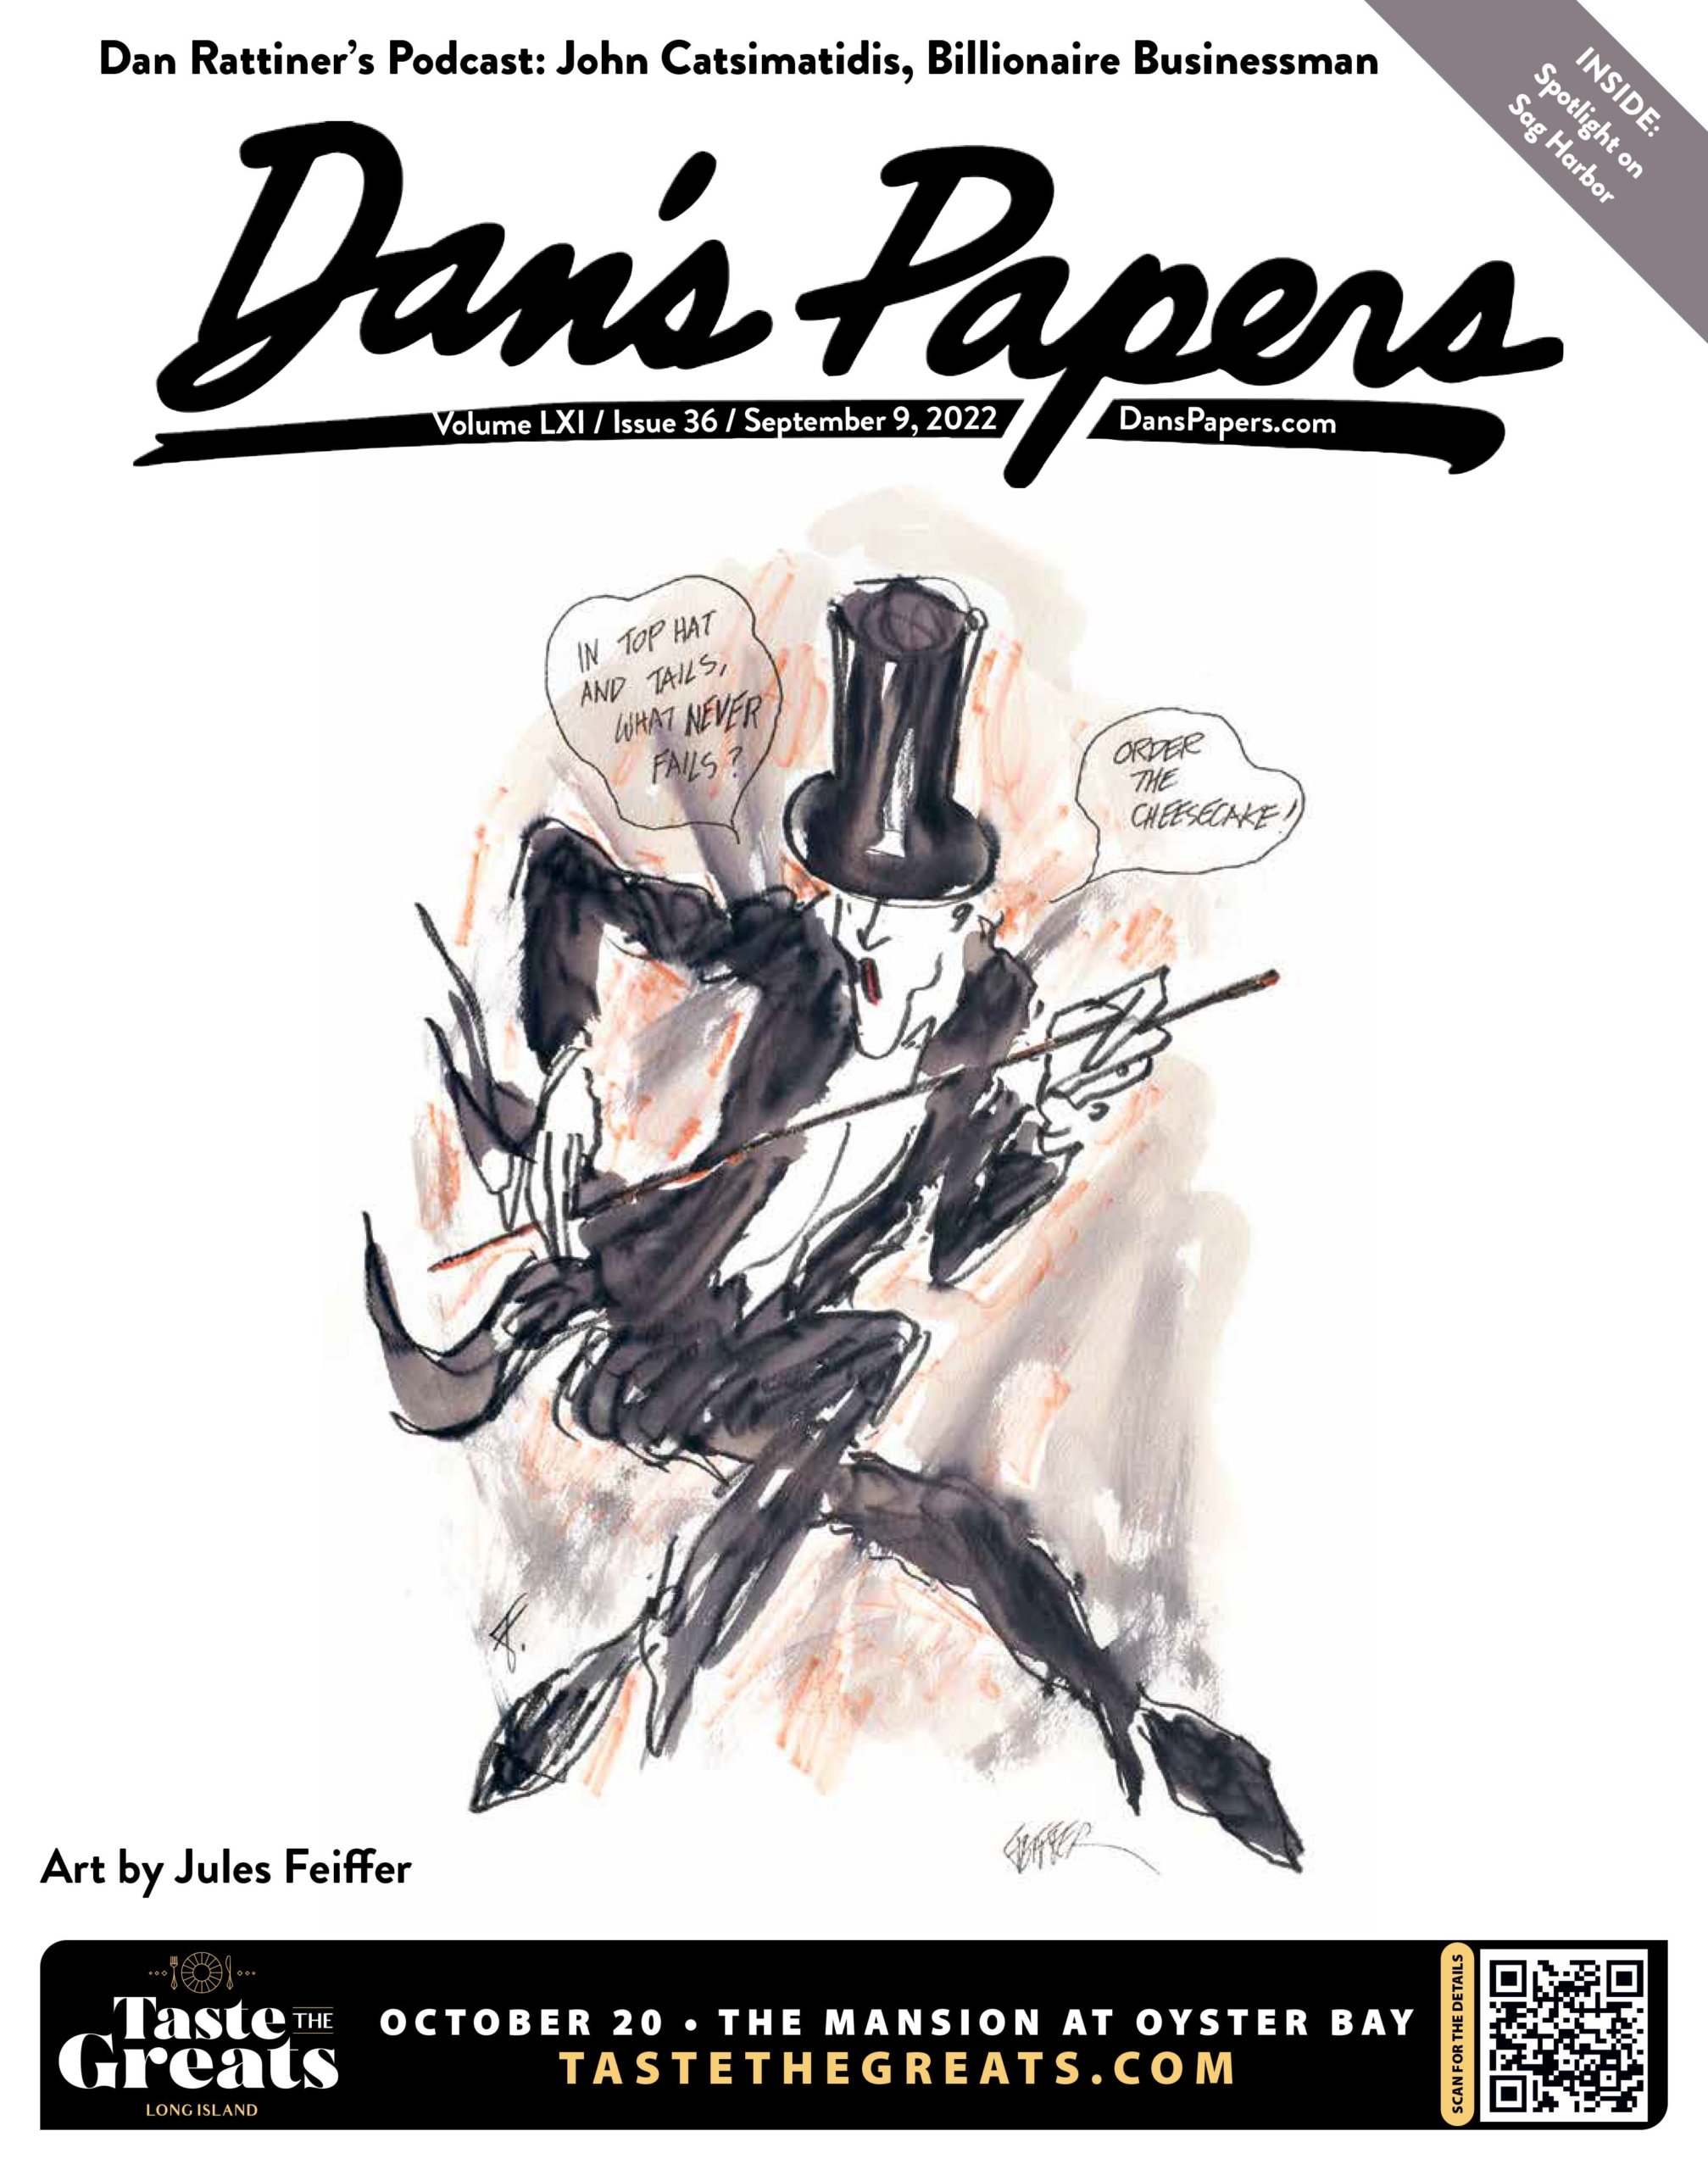 September 9, 2022 Dan's Papers cover art by Jules Feiffer